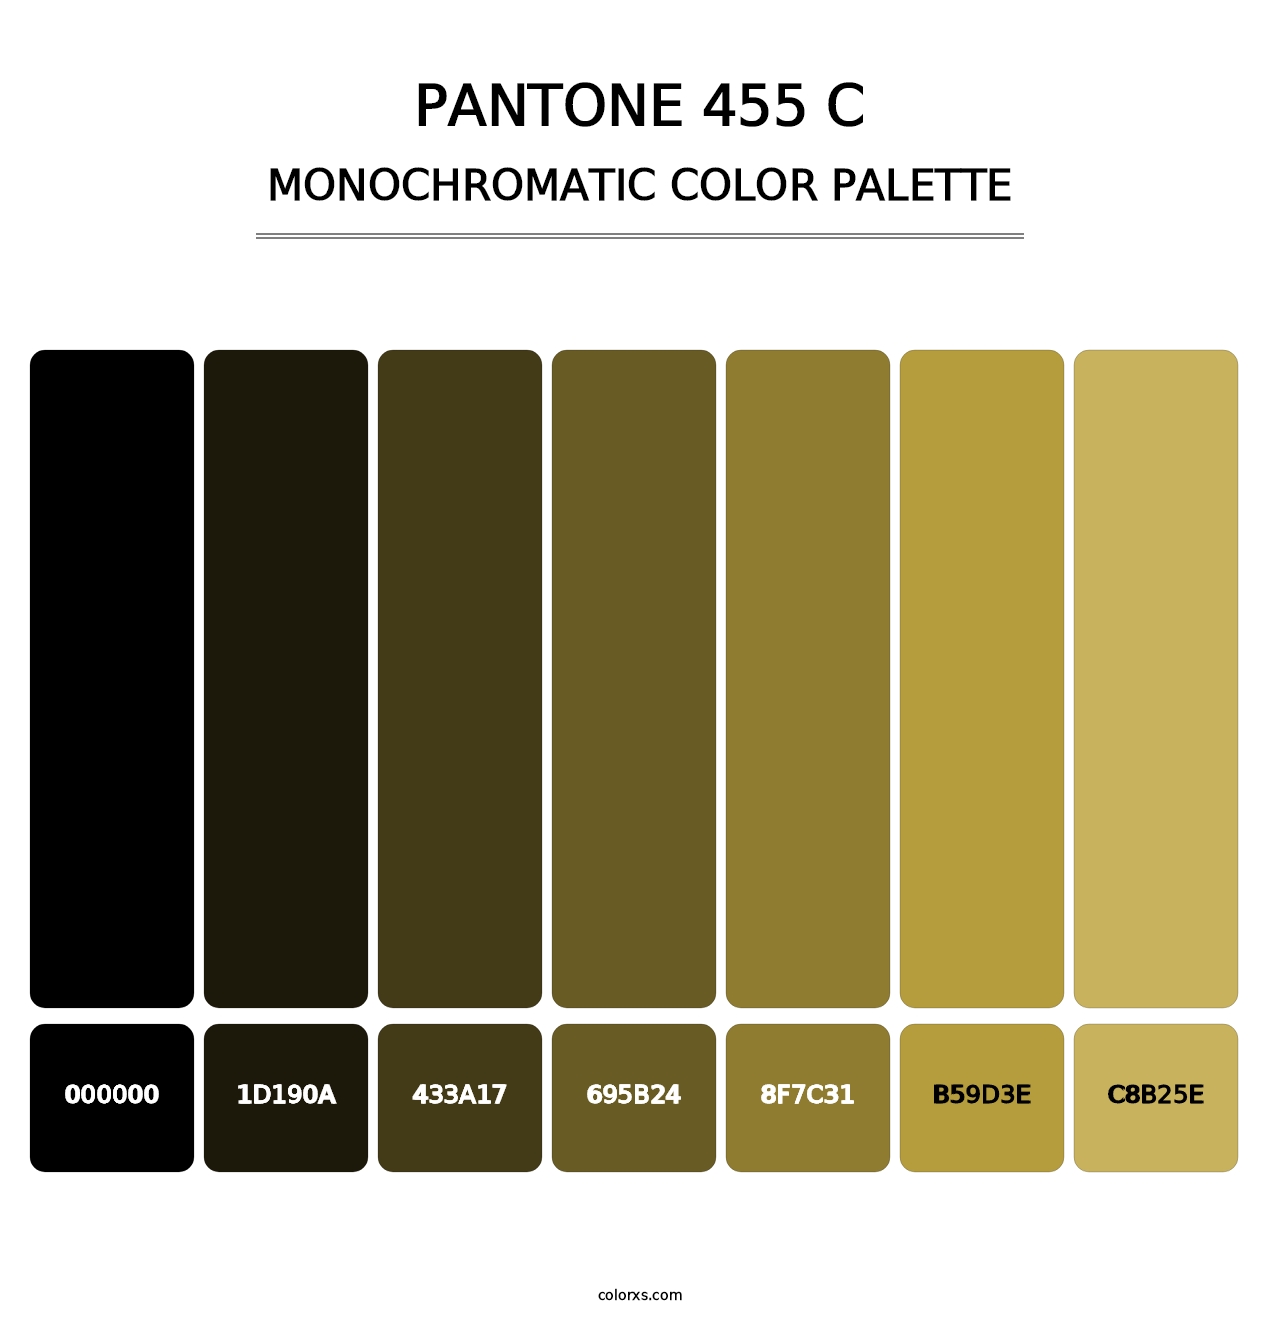 PANTONE 455 C - Monochromatic Color Palette